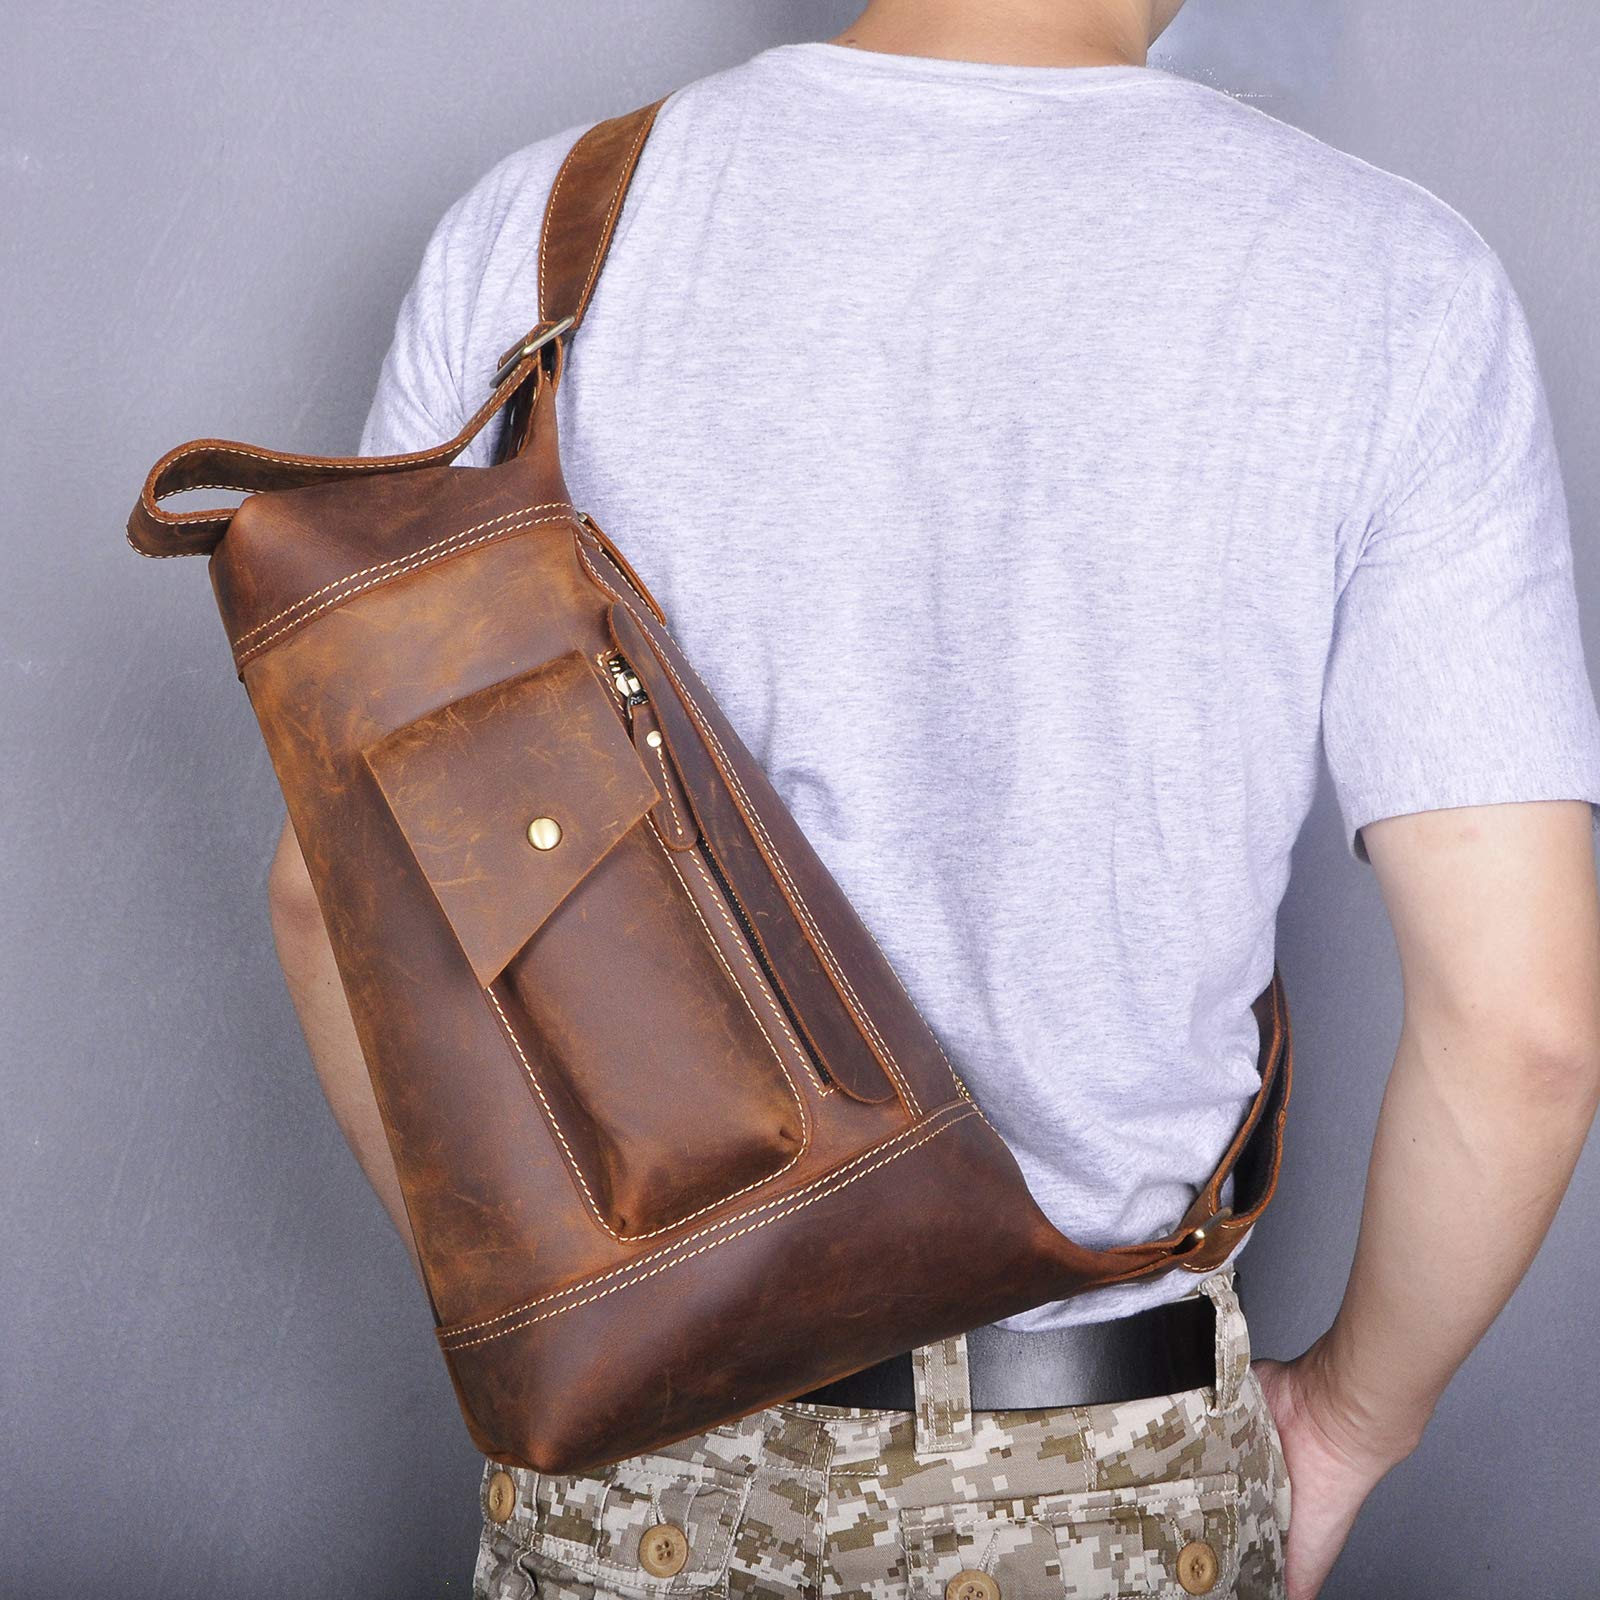 Le'aokuu Men Outdoor Large Travel Hiking Tea Cross-body Chest Sling Bag Rig One Shoulder Strap Bag Backpack Men Quality Leather 2329 (Brown)